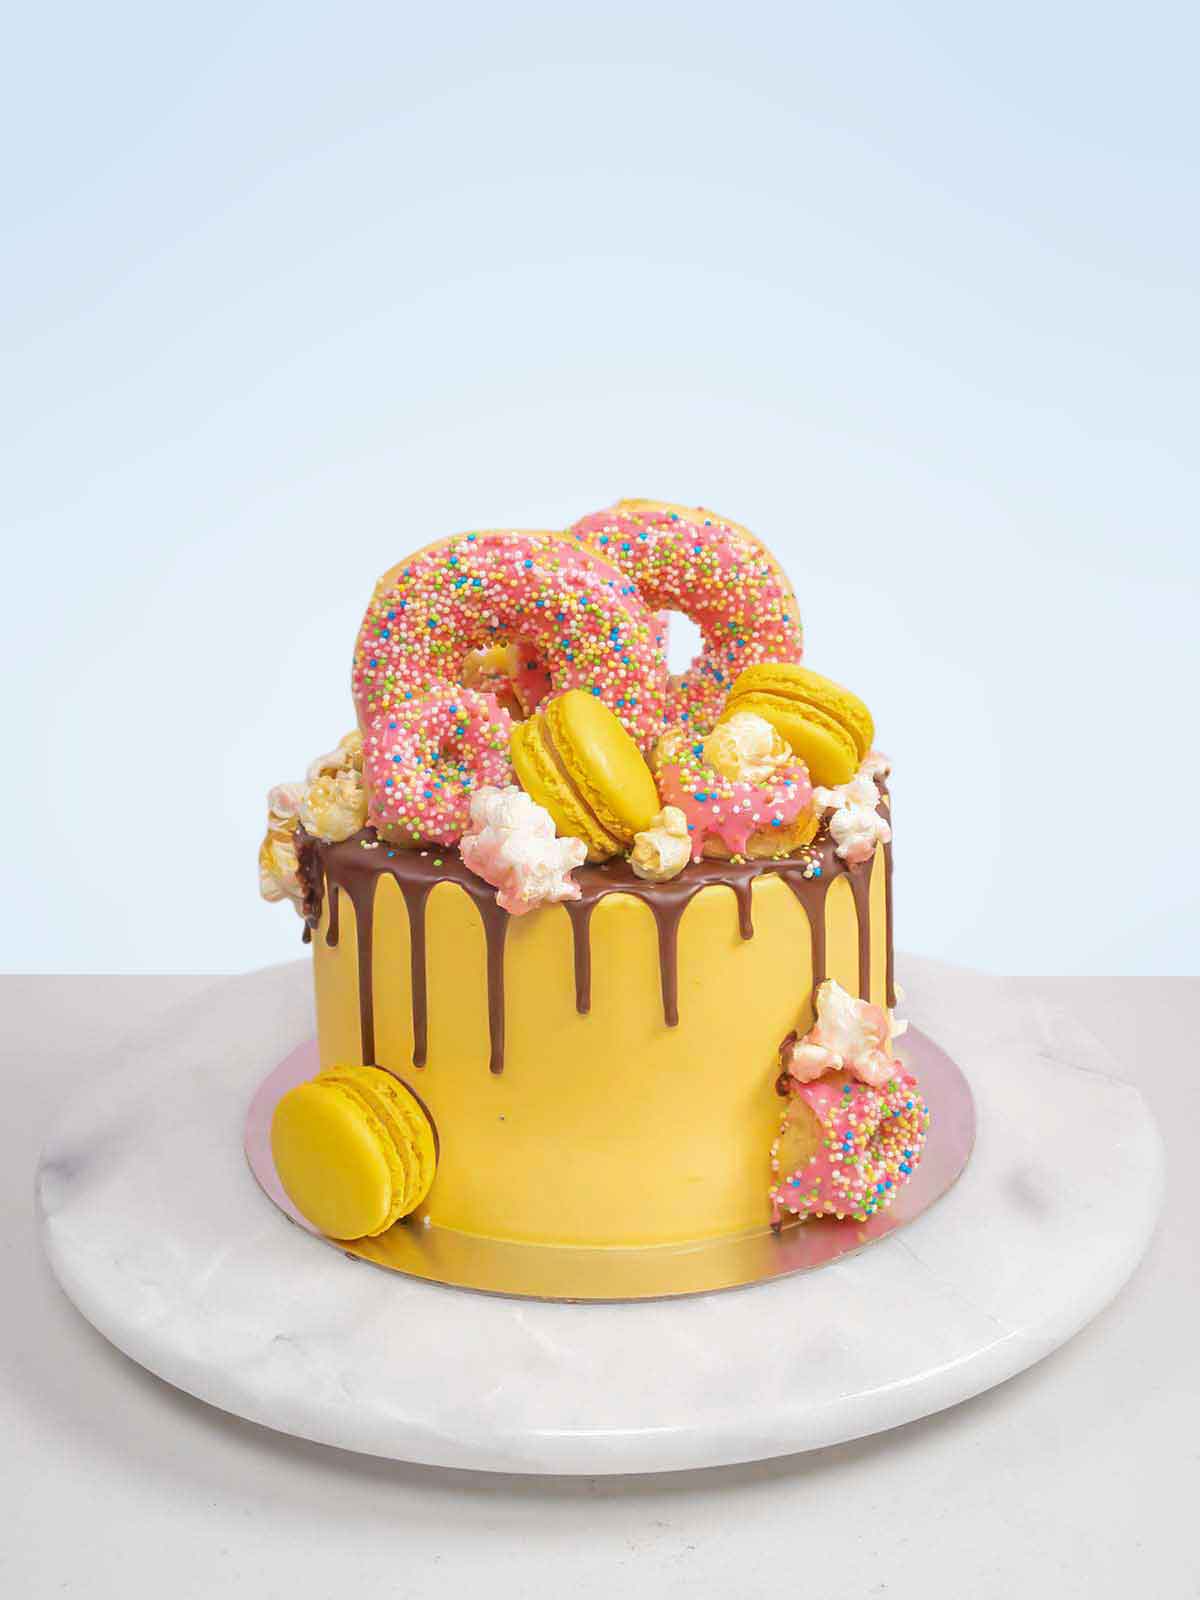 Donut Cake with Drip & Sprinkles – Pao's cakes